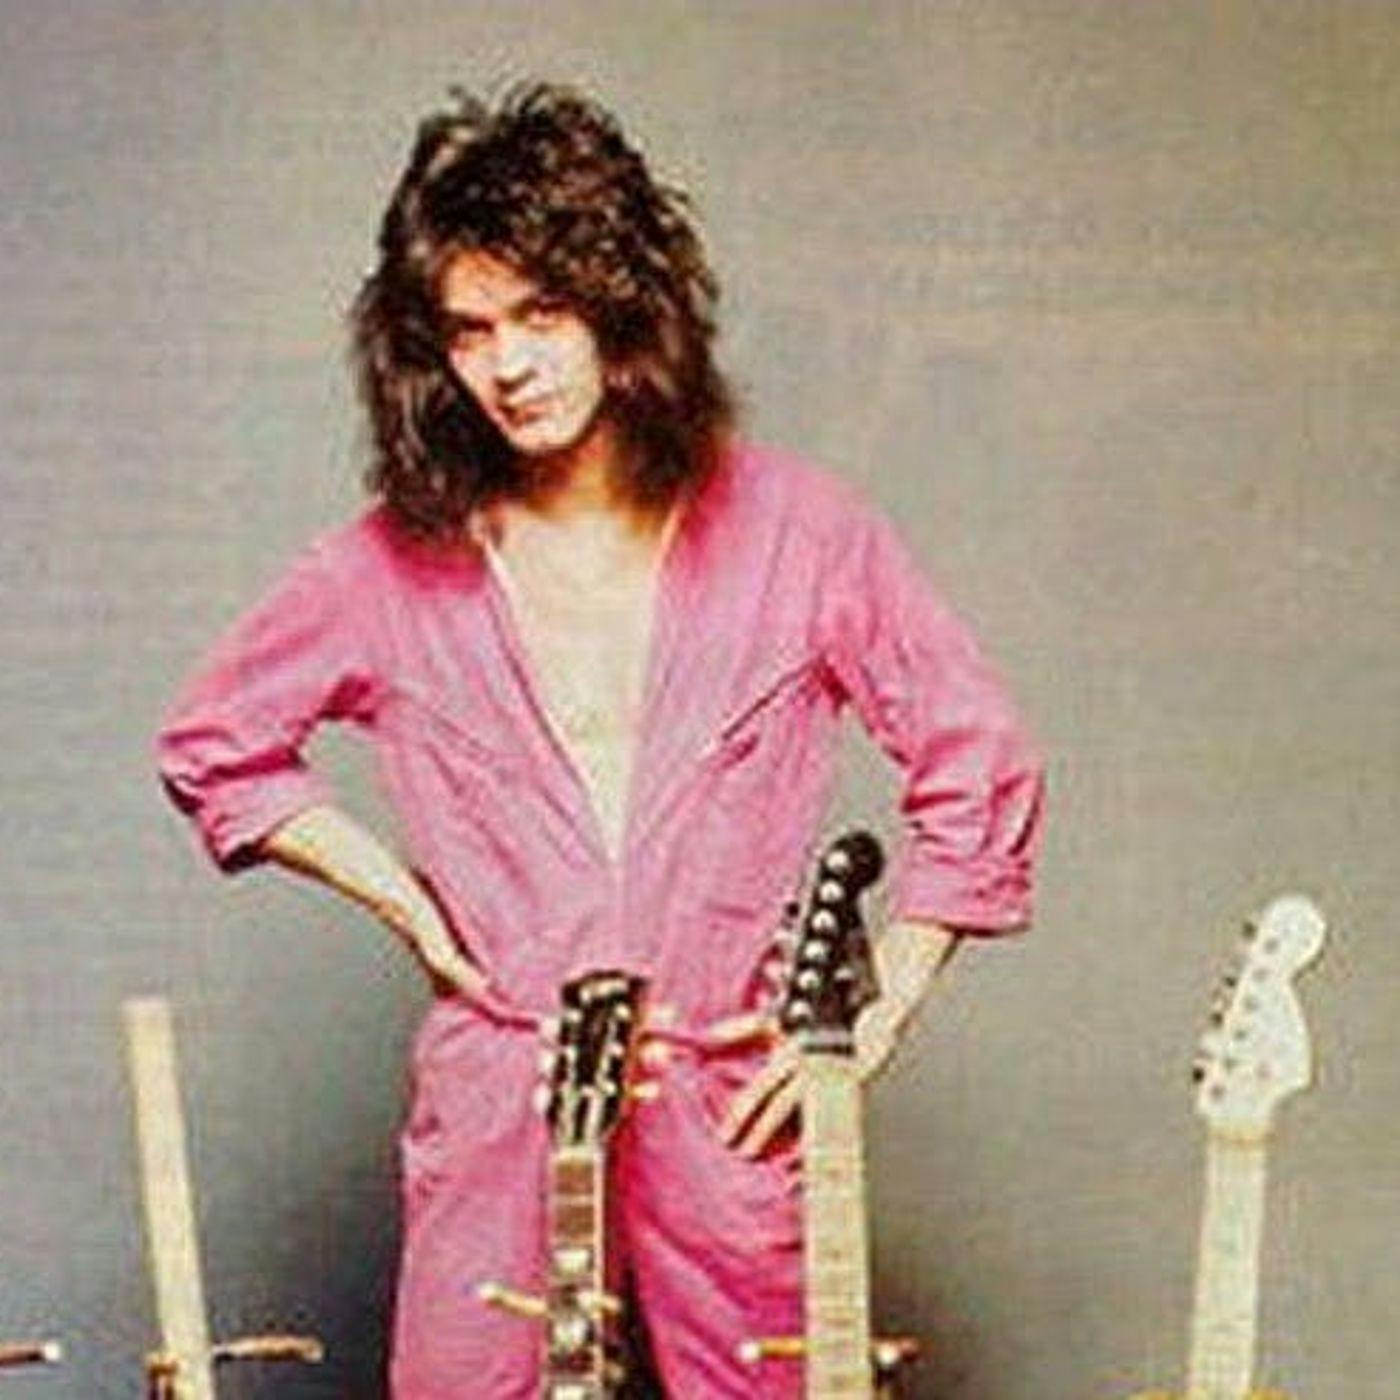 Eddie Van Halen Tribute